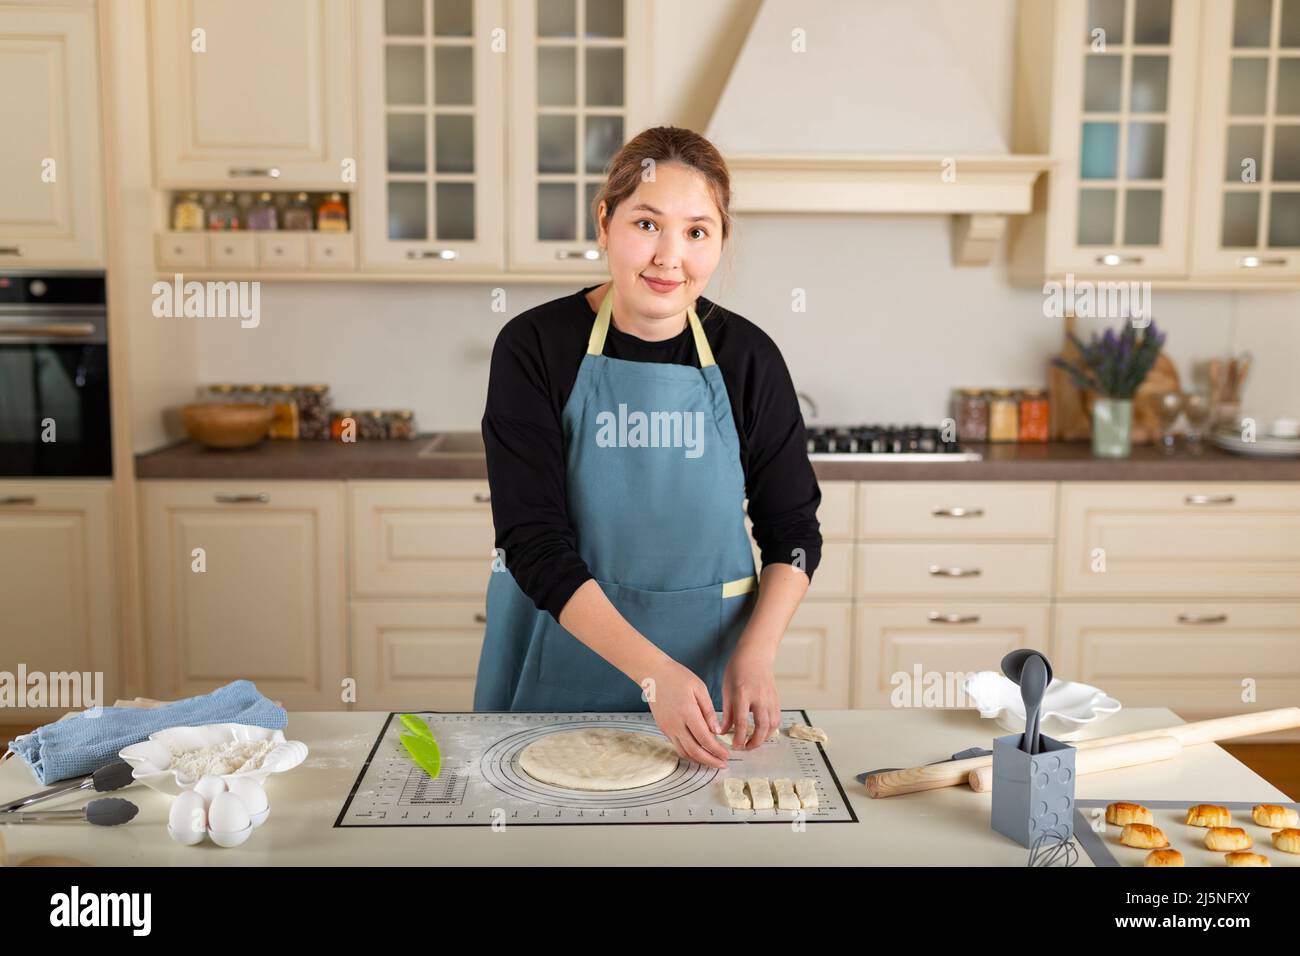 La giovane donna kazaka sta cucinando la cottura all'interno di una moderna cucina casalinga. Foto Stock